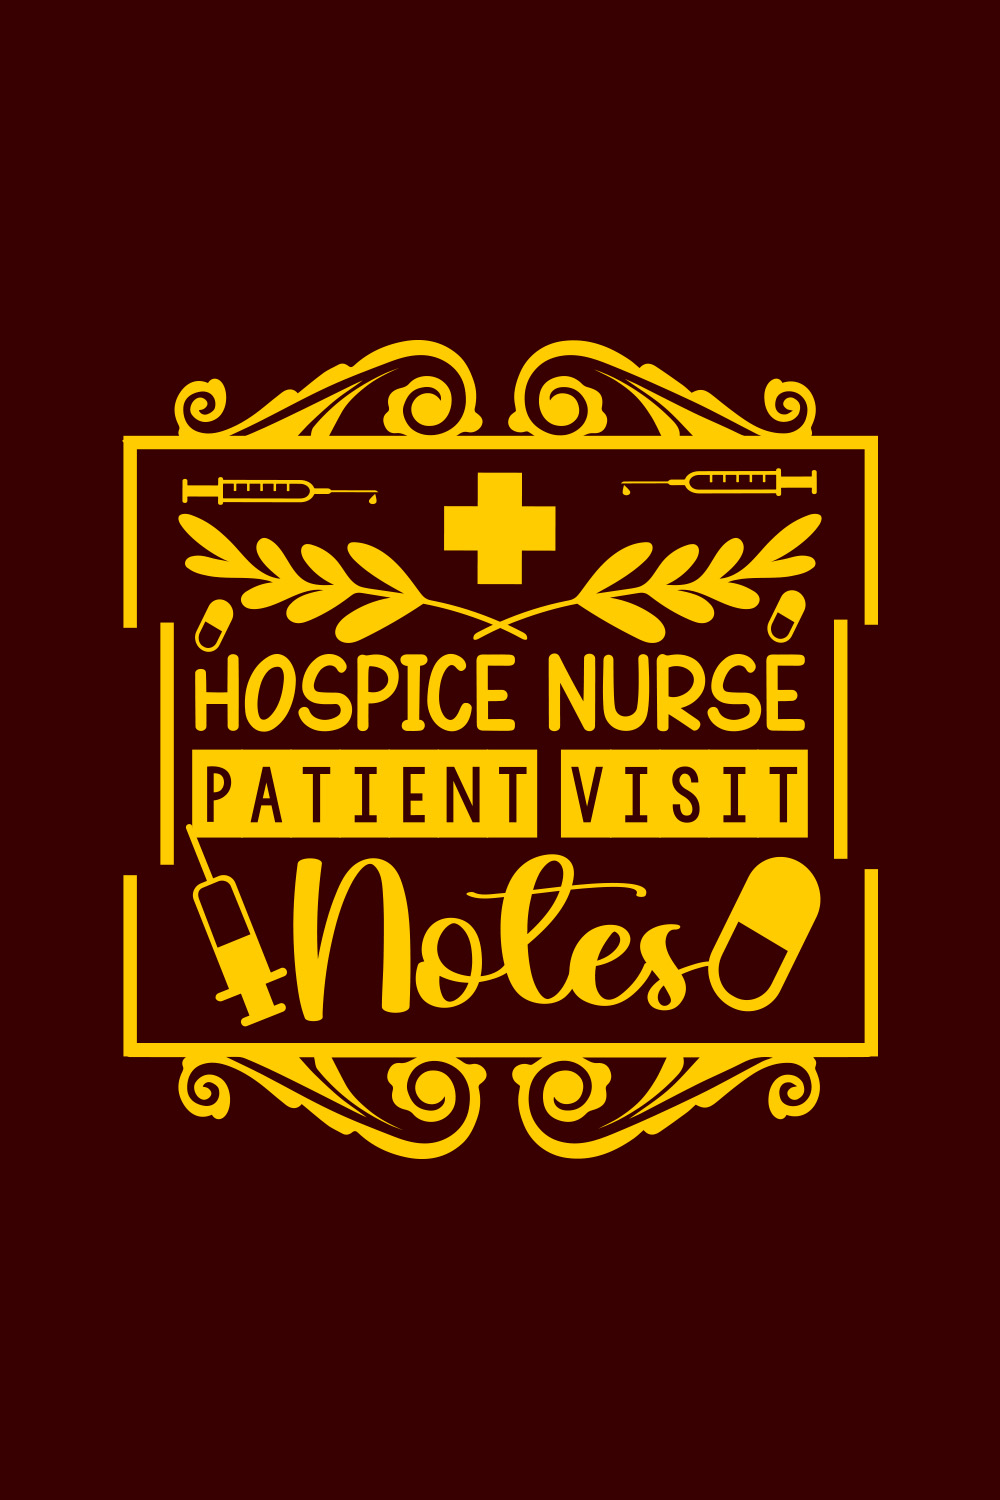 Hospice Nurse Patient Visit Notes T-shirt design pinterest preview image.